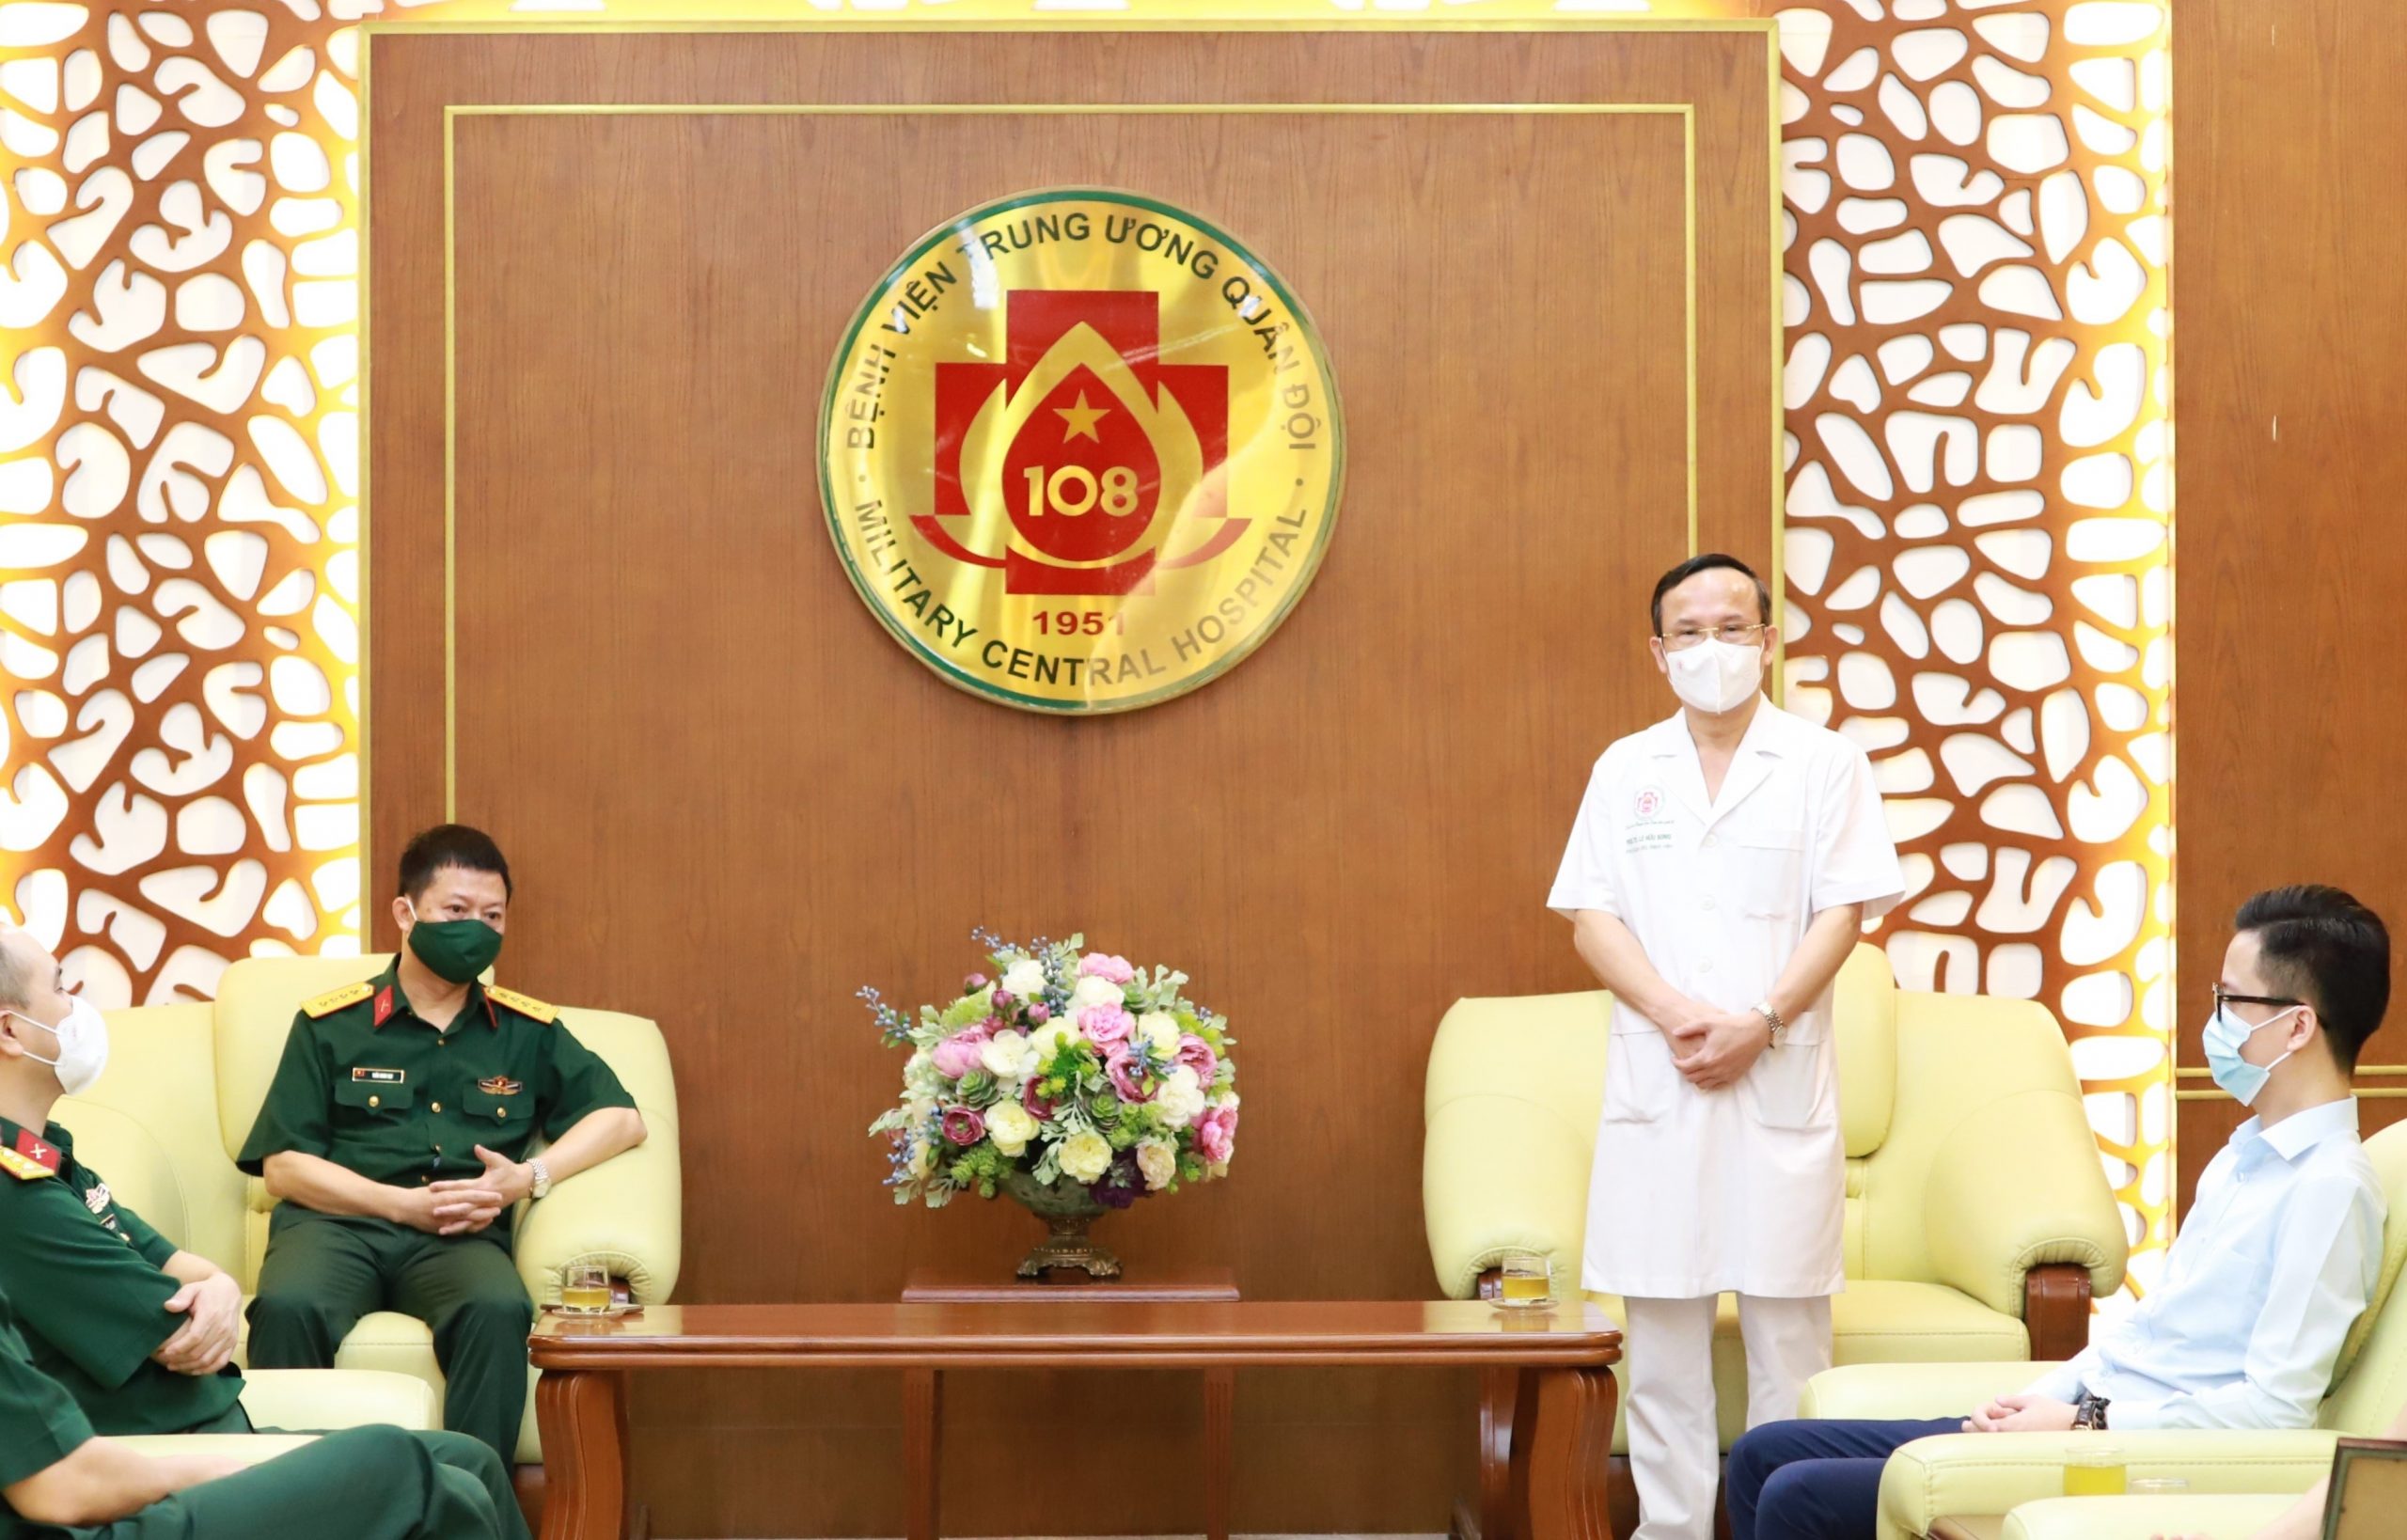 MB bày tỏ sự biết ơn đến đội ngũ y bác sĩ Bệnh viện Trung ương Quân đội 108